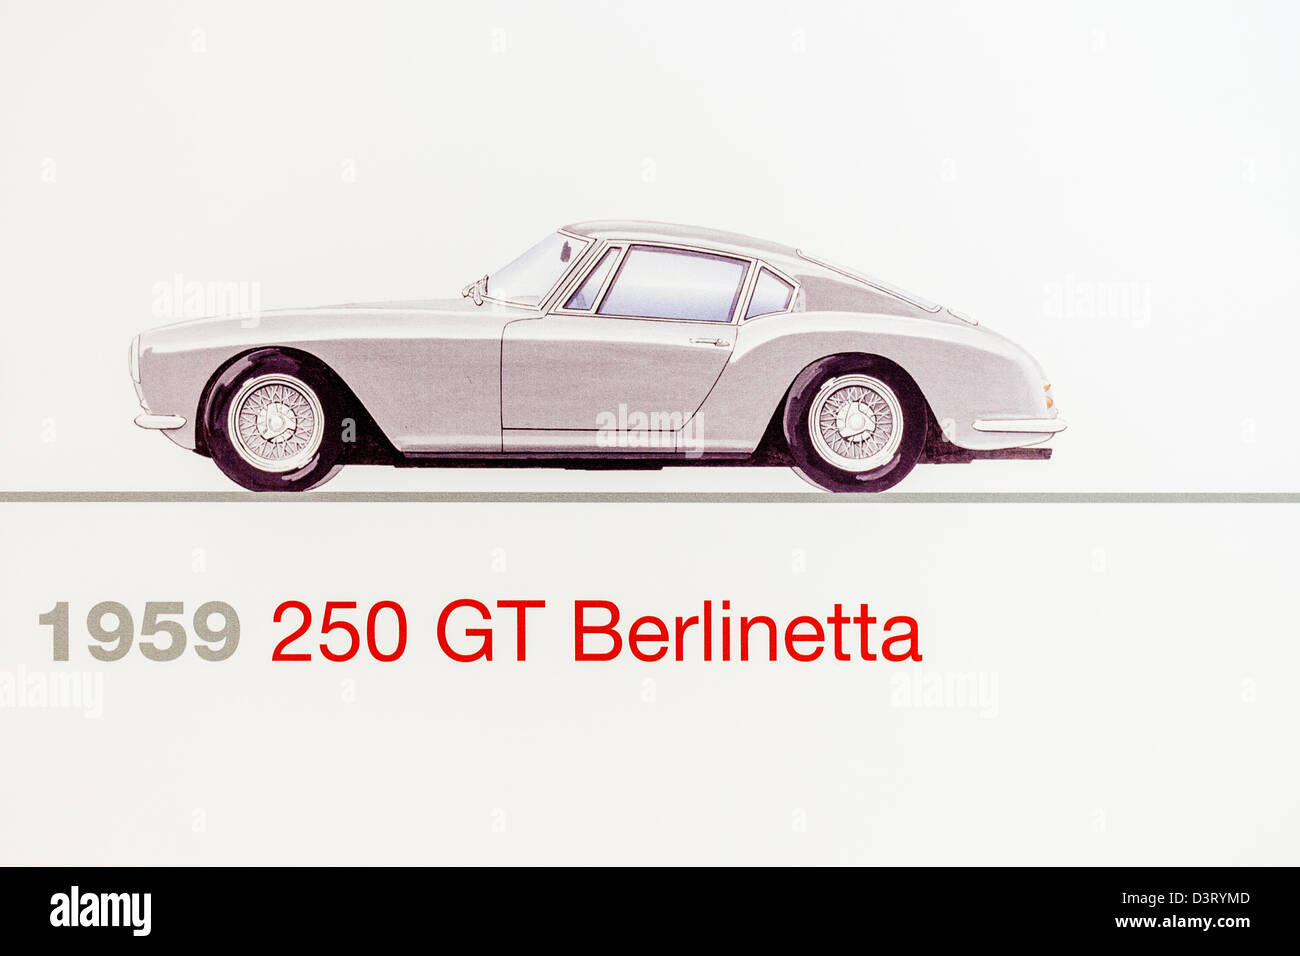 Graphic representation of a 1959 Ferrari 250 GT Berlinetta, Ferrari Museum, Maranello, Italy Stock Photo